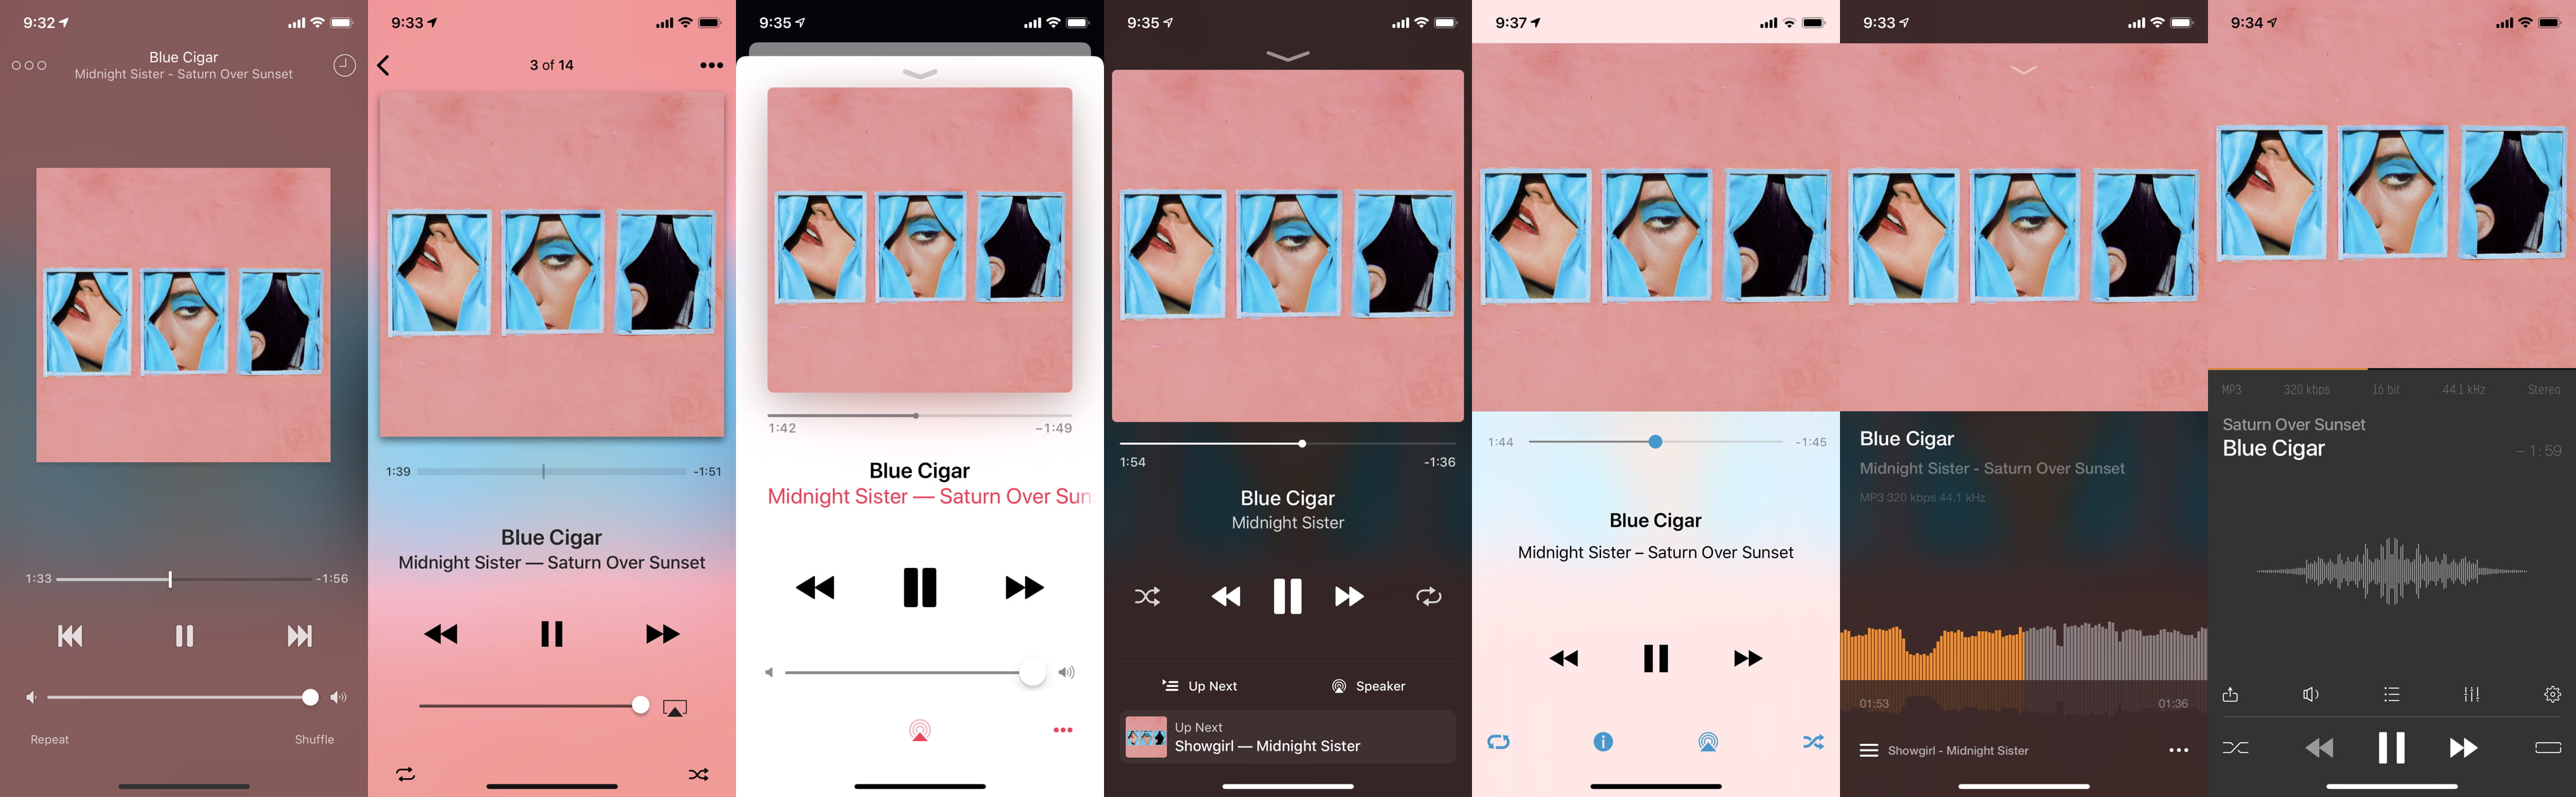 Visualize álbuns, playlists e muito mais no Música no iPhone